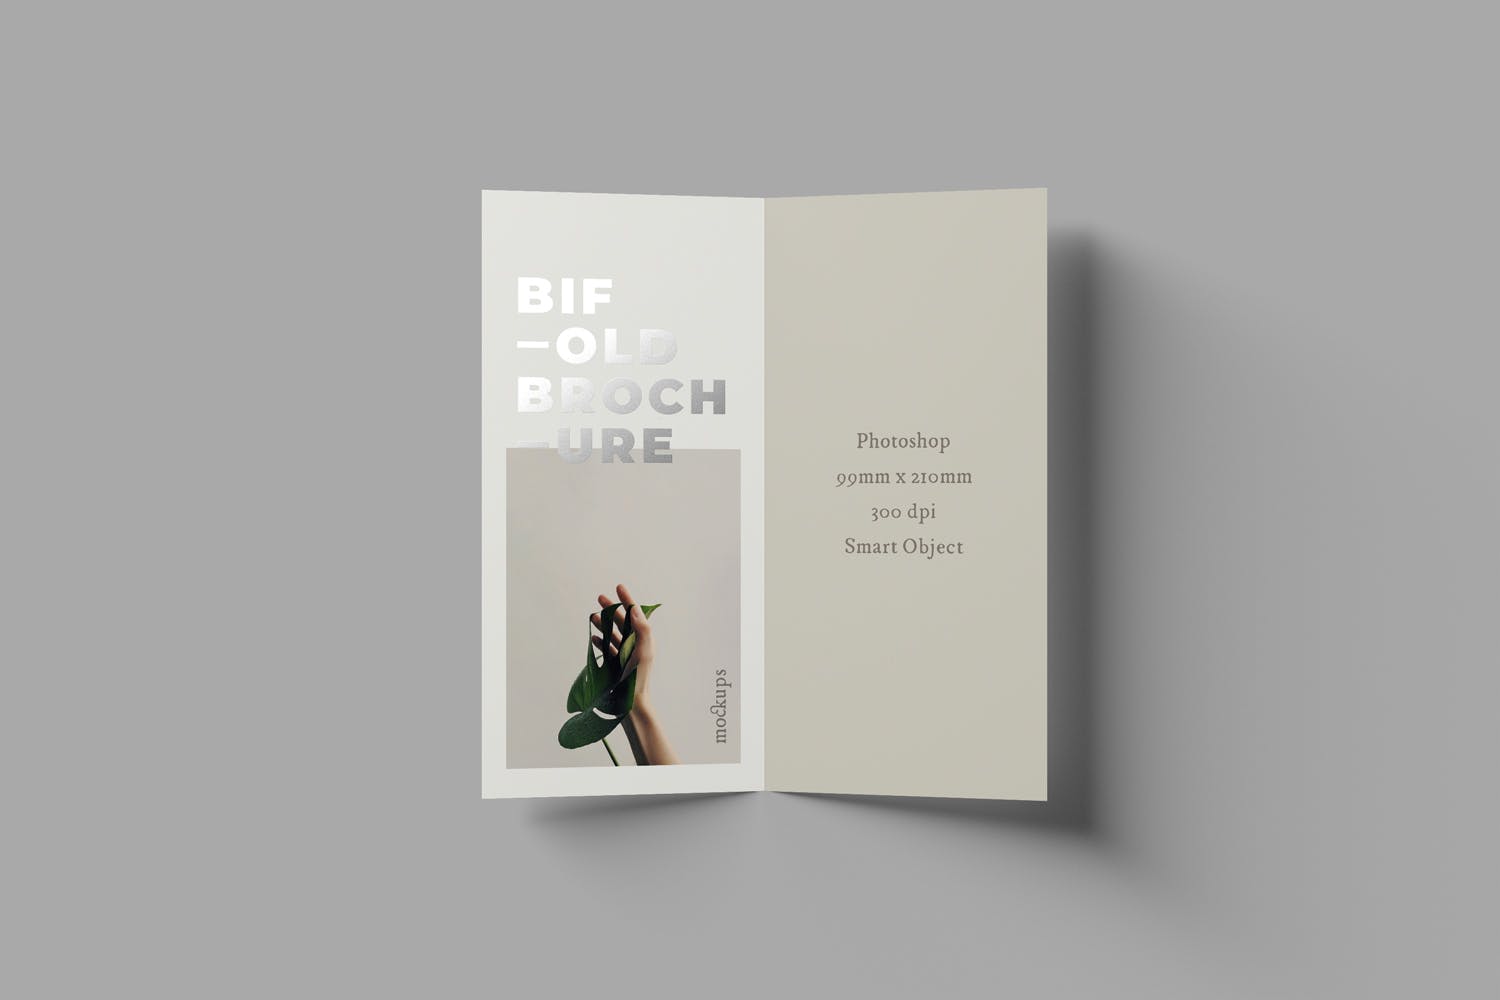 优雅设计风格折页宣传册设计图样机模板 Bifold DL Brochure Mockups设计素材模板